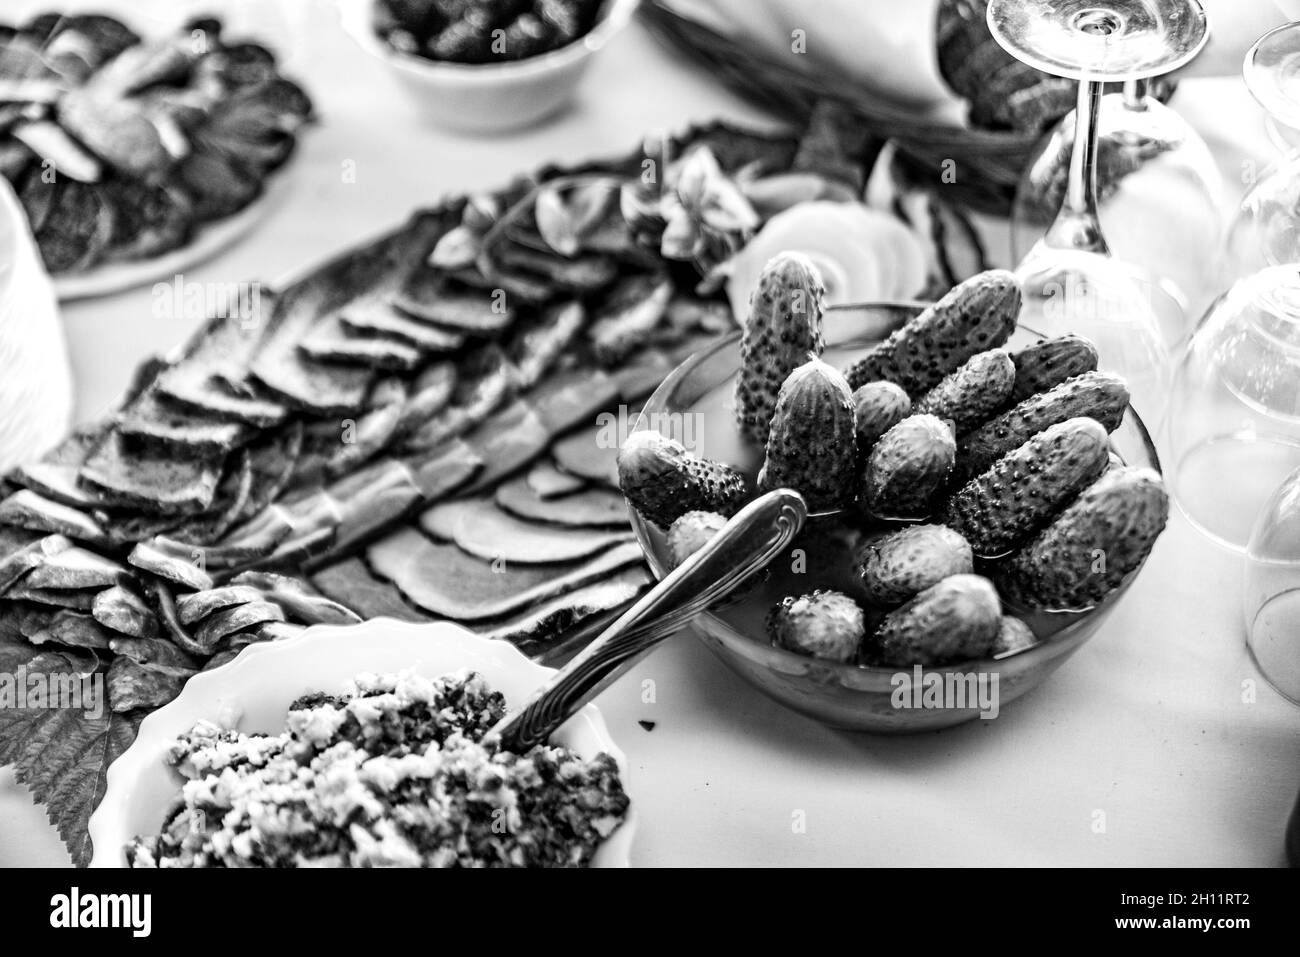 Viandes sur la table, saindoux et concombres marinés.Nourriture polonaise, entrées froides sur une table de pays. Banque D'Images